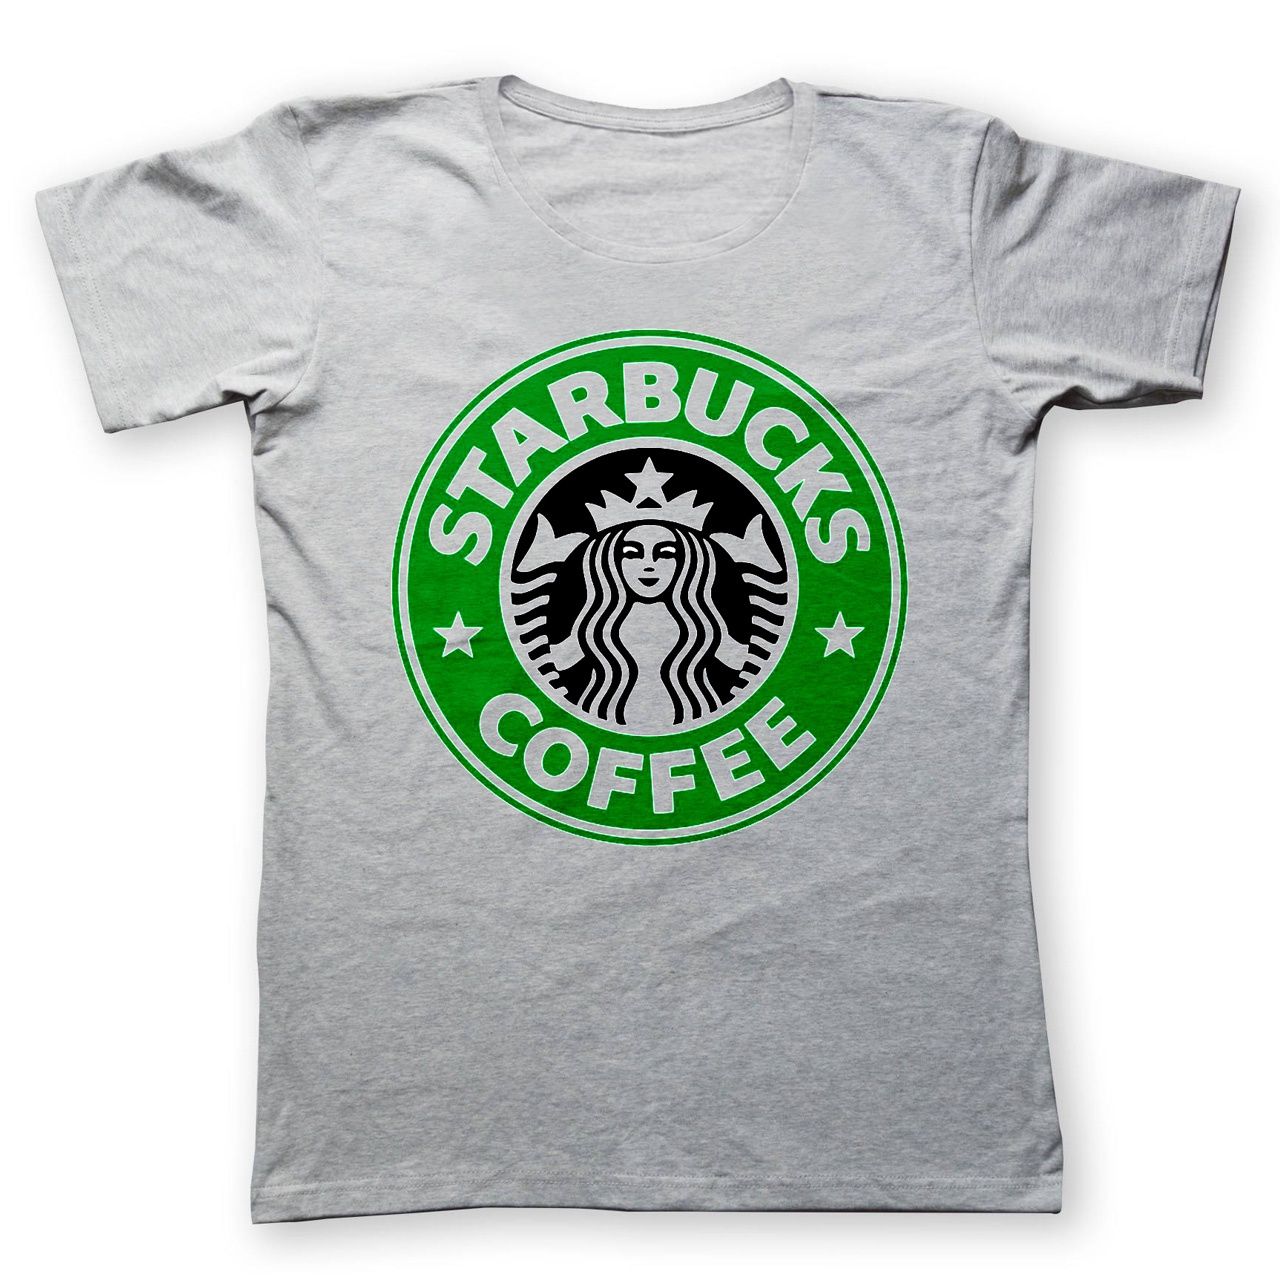 تی شرت به رسم طرح استارباکس کد 463 -  - 1